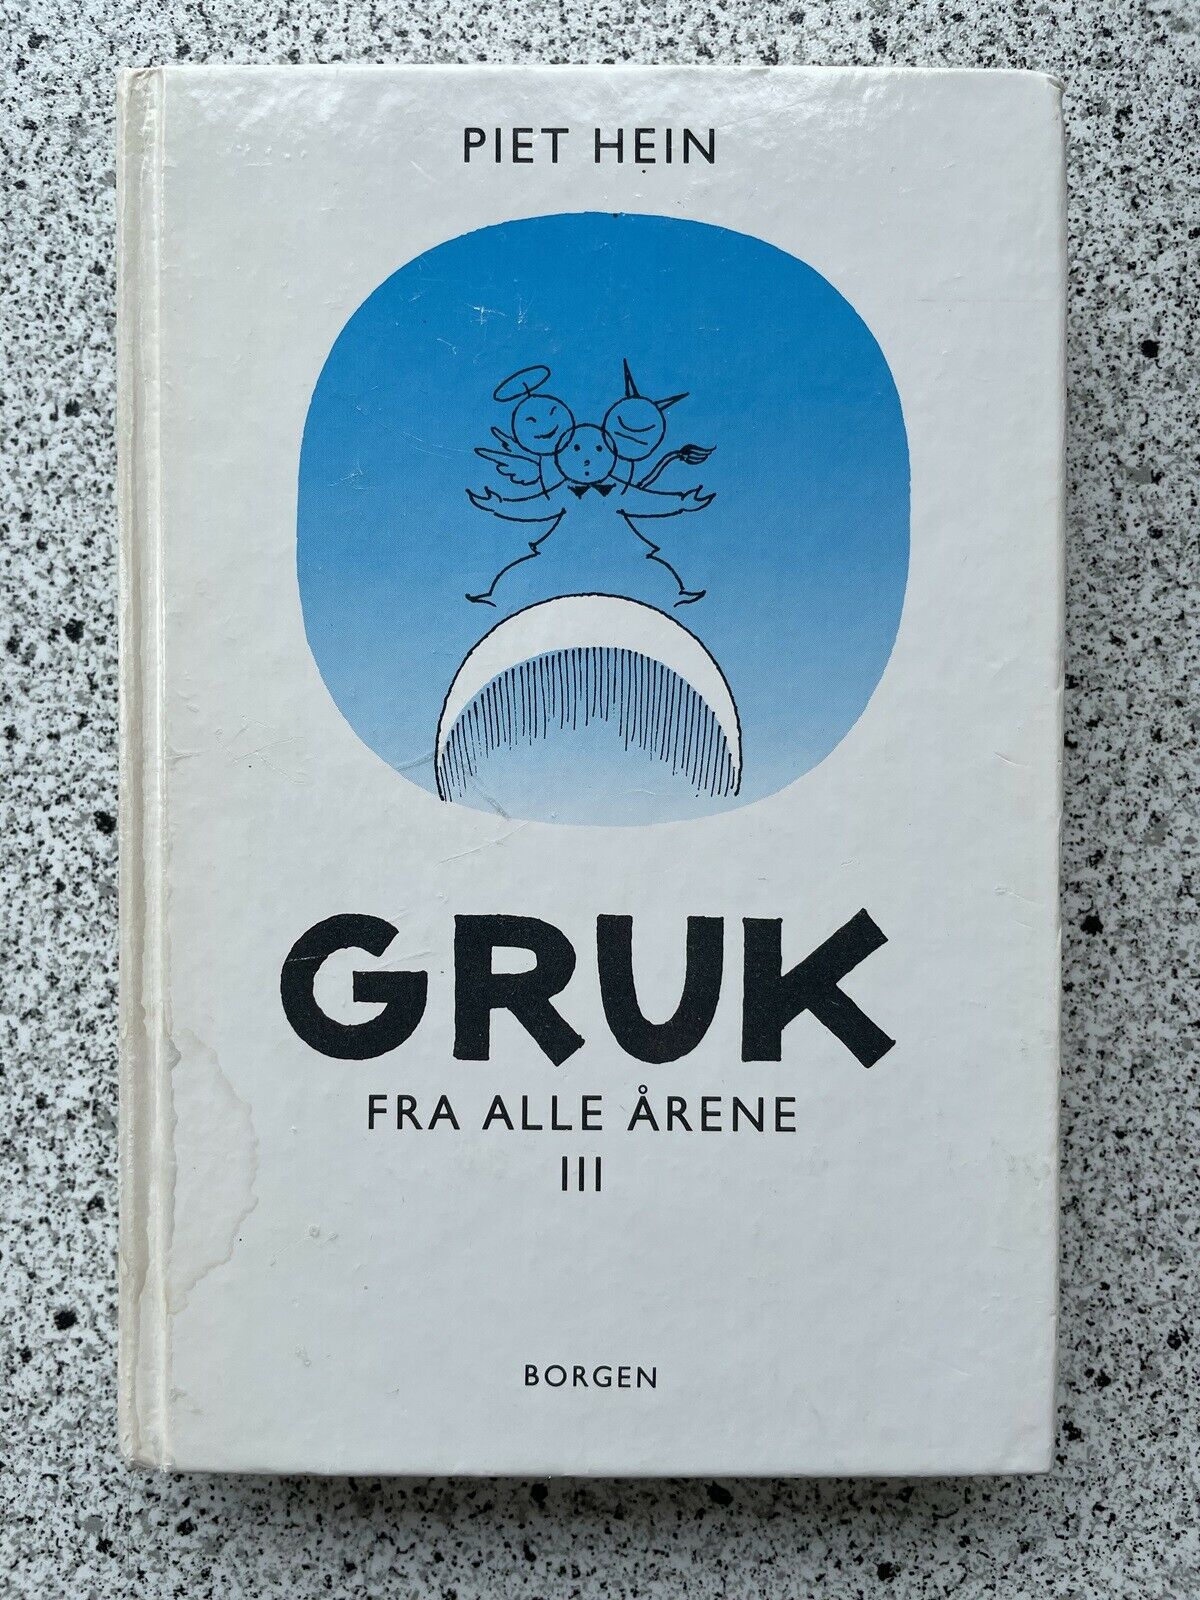 GRUK fra årene III, Piet Hein, genre: digte dba.dk Køb Salg af Nyt og Brugt